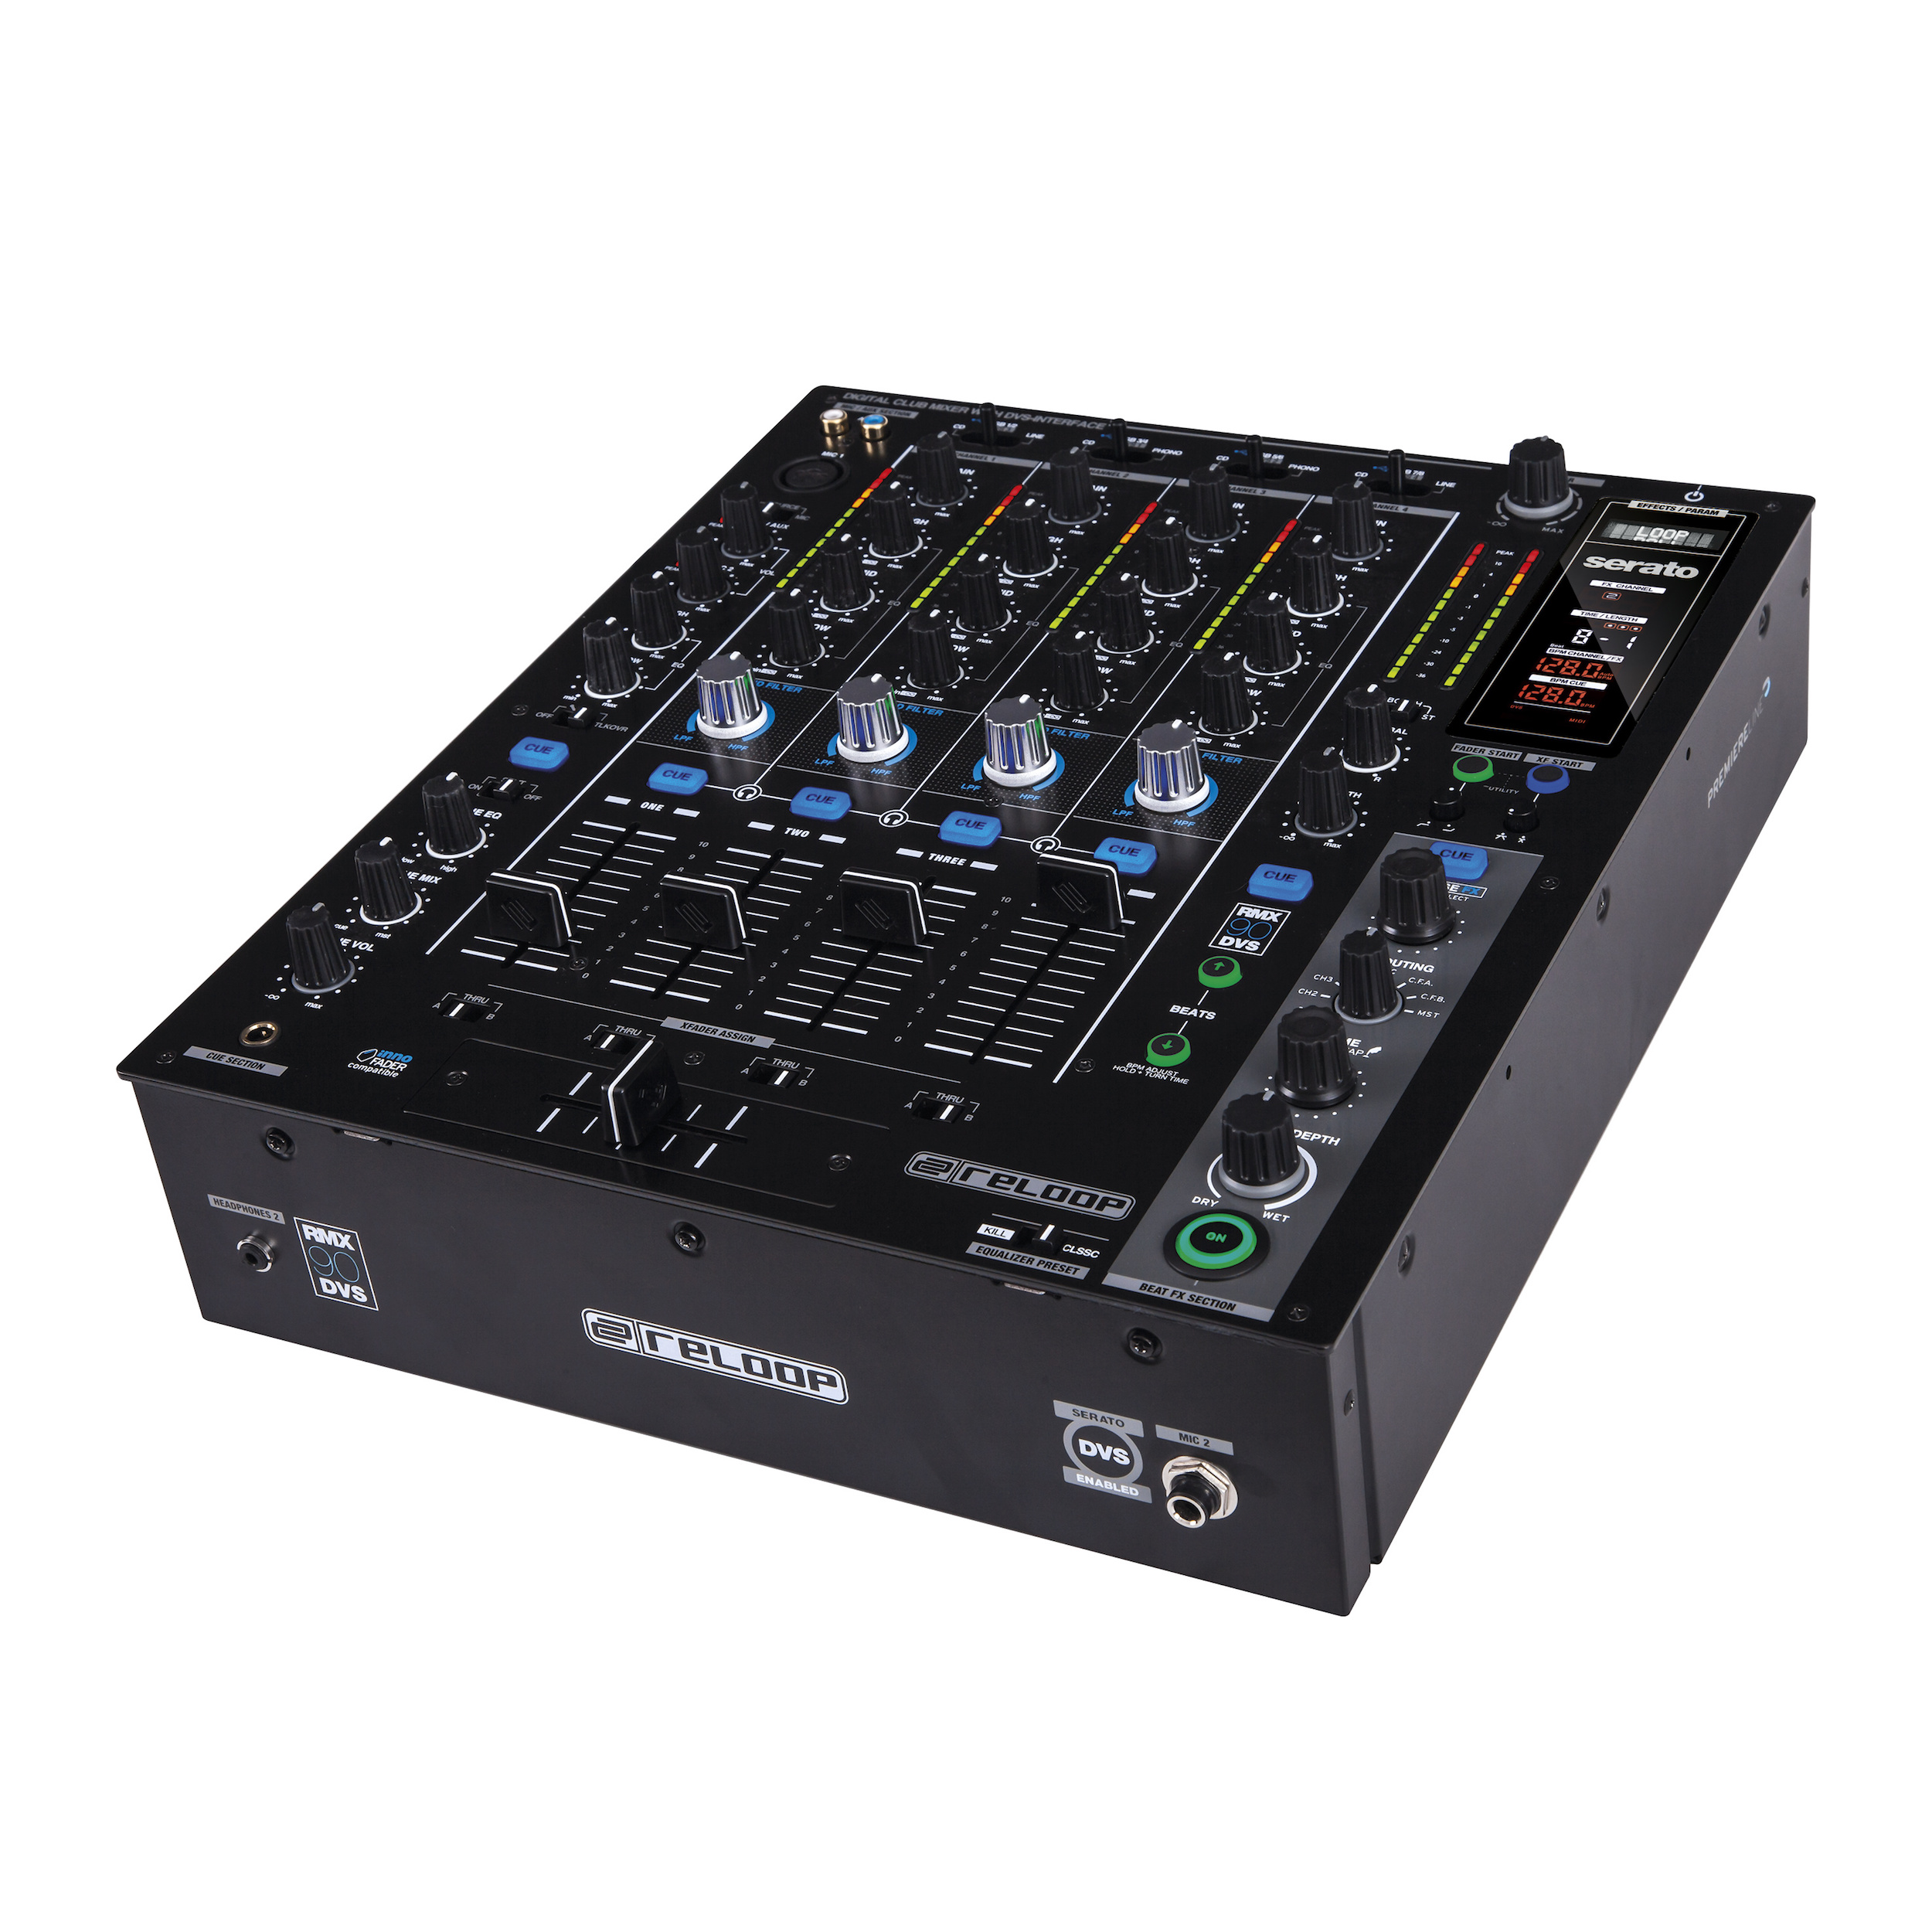 Nuevo mixer Reloop RMX-90 DVS compatible con Serato DJ